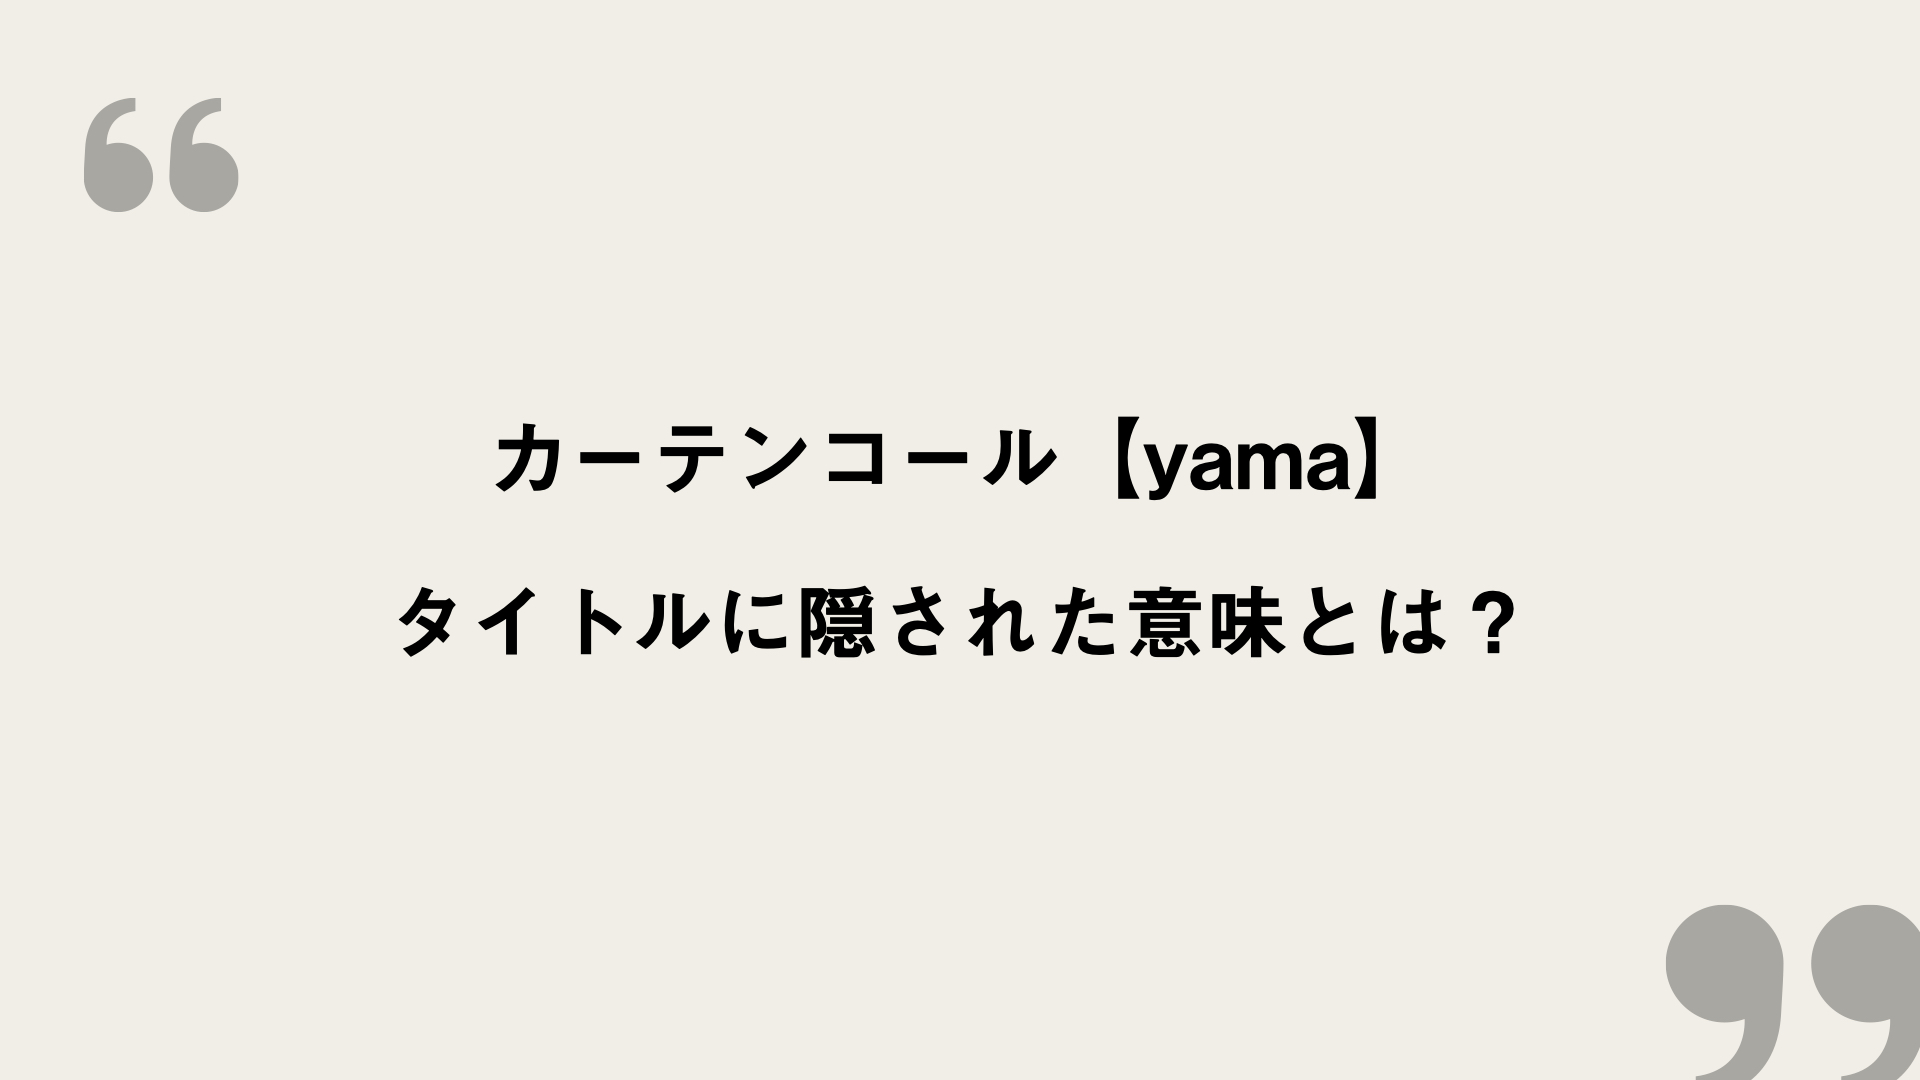 カーテンコール Yama 歌詞の意味を考察 タイトルに隠された意味とは Framu Media